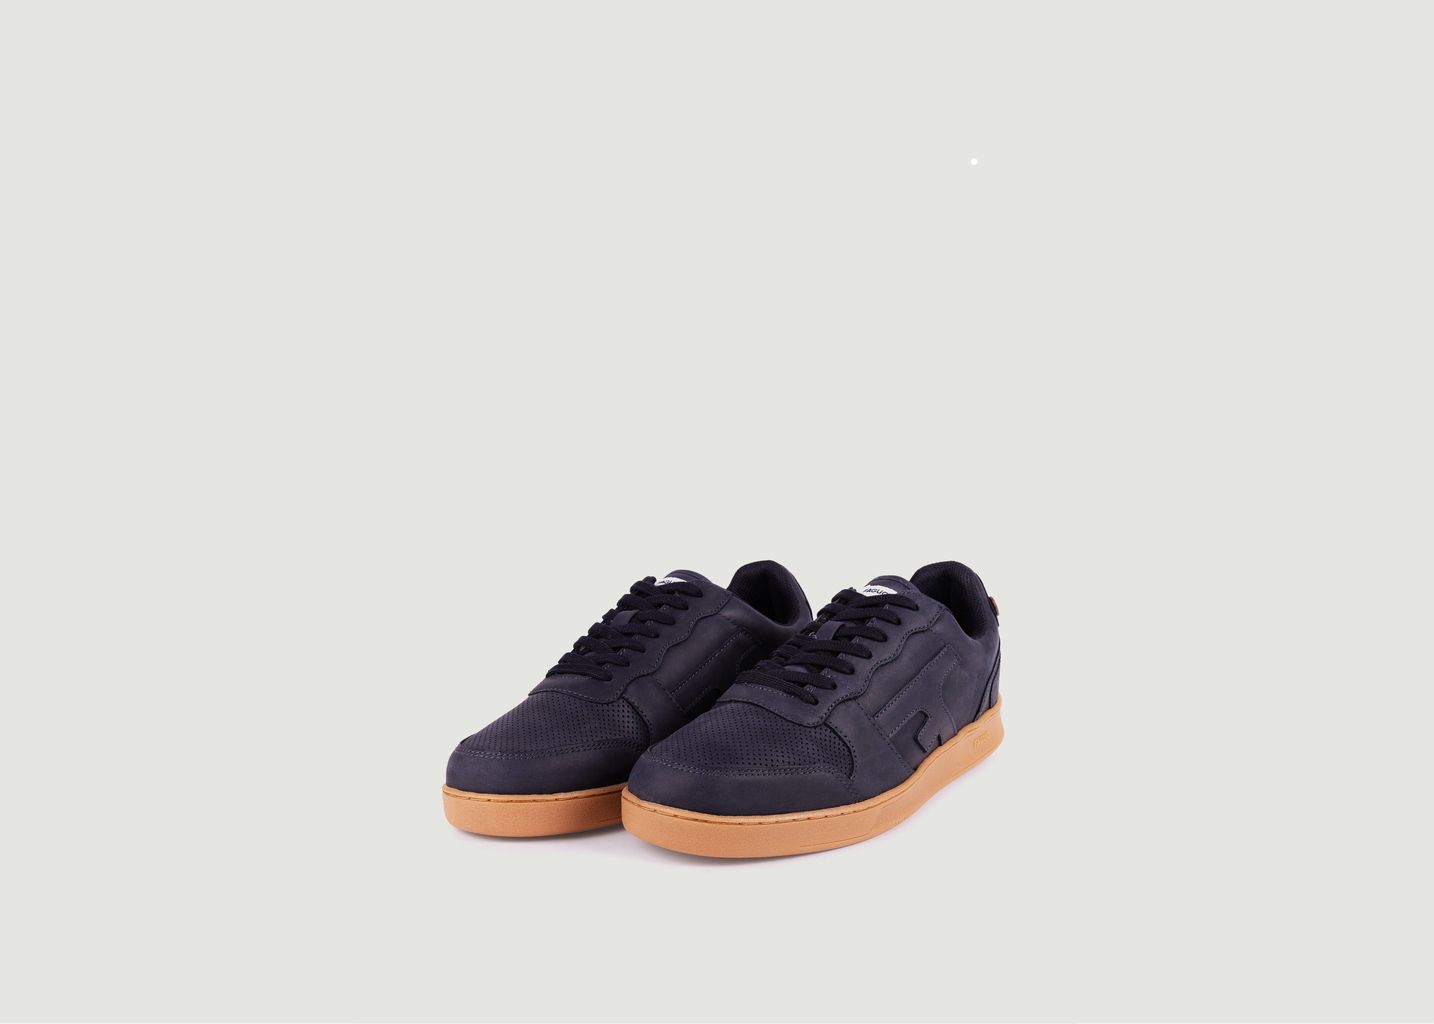 Hazel leather sneakers - Faguo